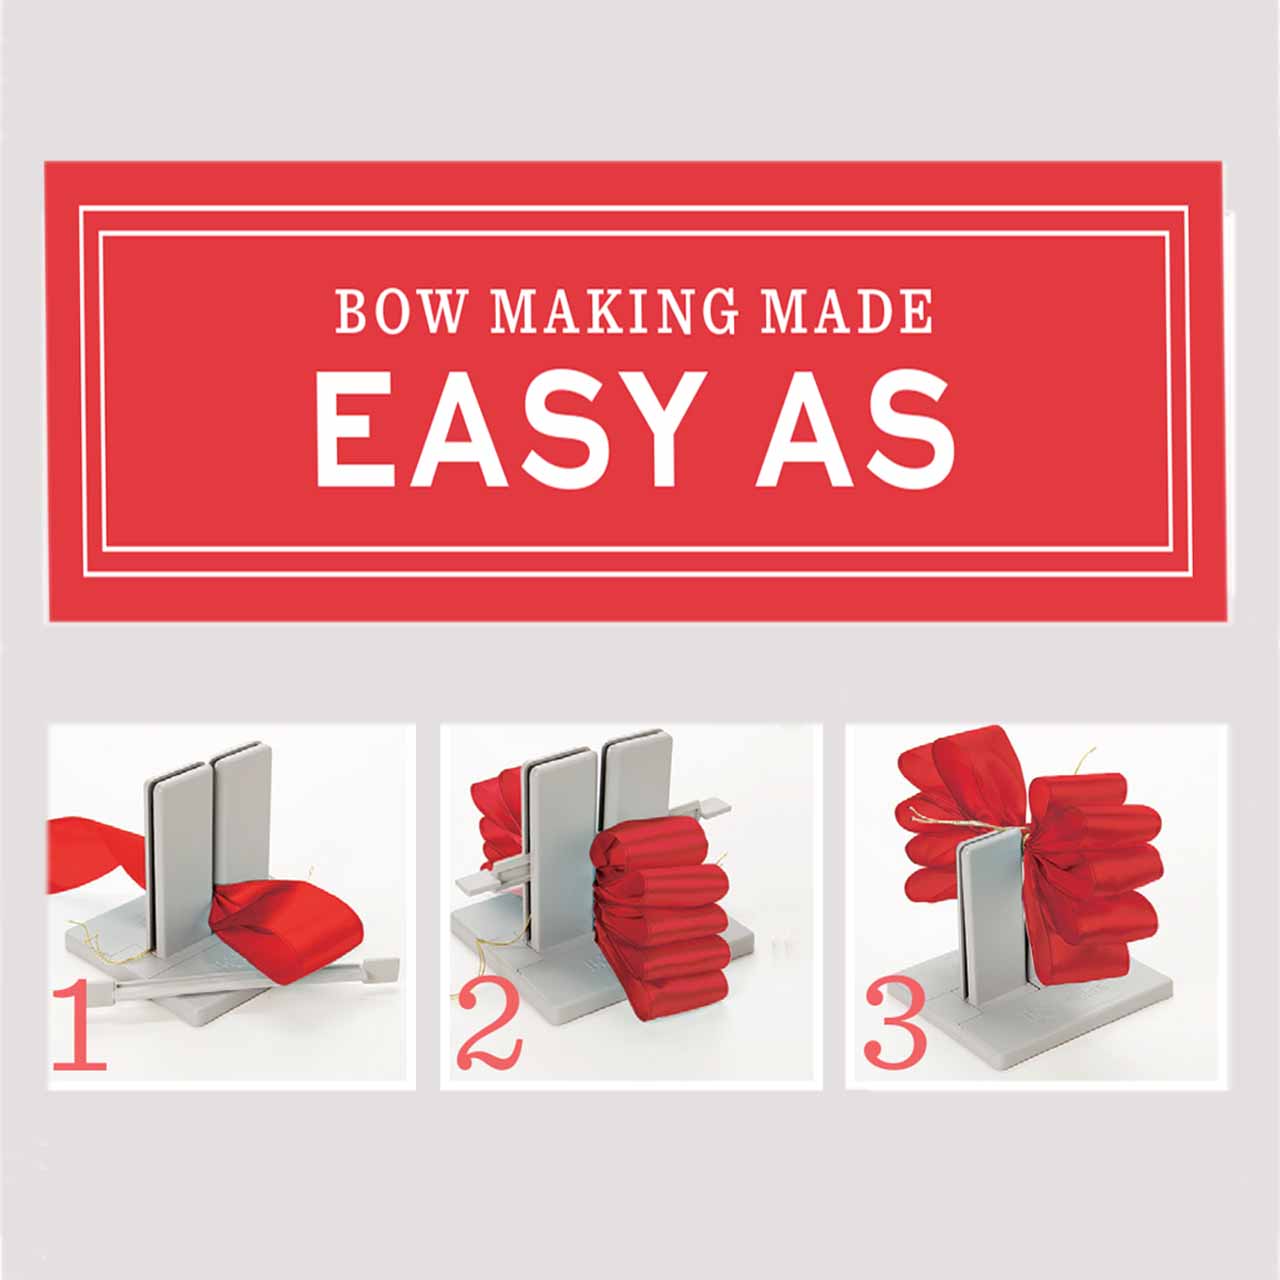 Darice Large Bowdabra Bow Maker Crafting Ribbon/Bows Sameday Post